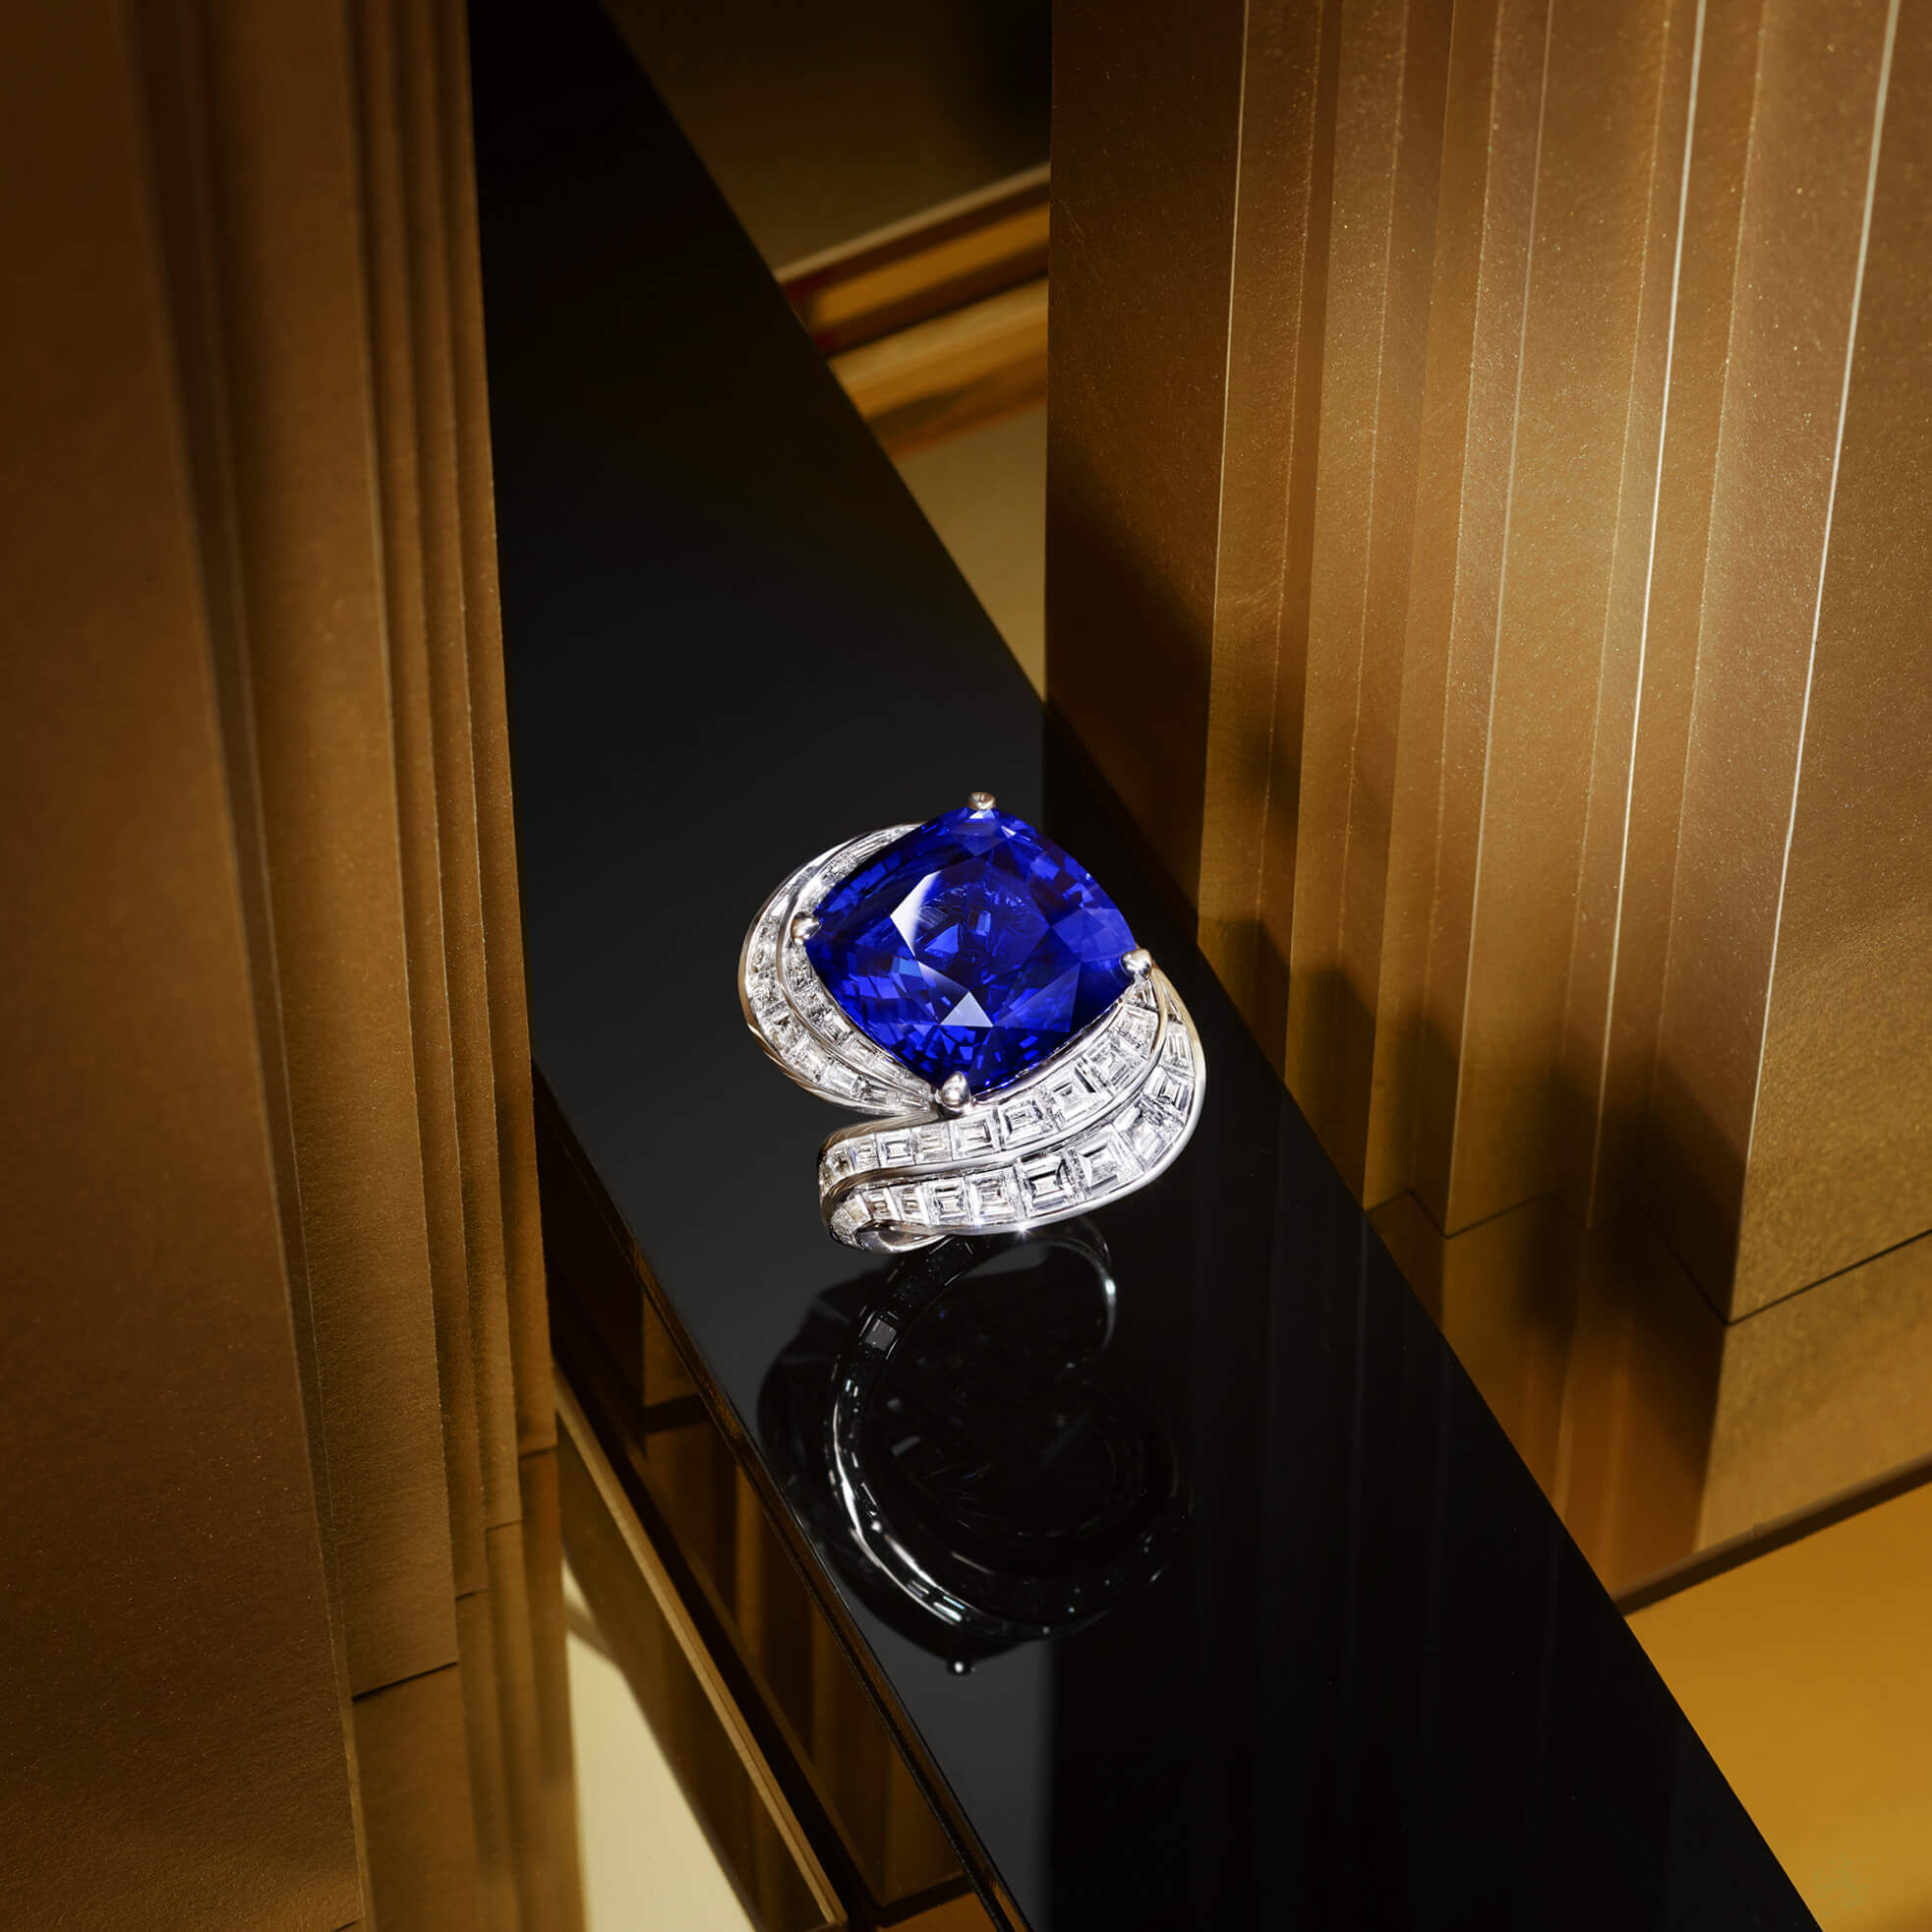 A Graff Sapphire and Diamond Ring featuring a 22.84 ct cushion cut sapphire